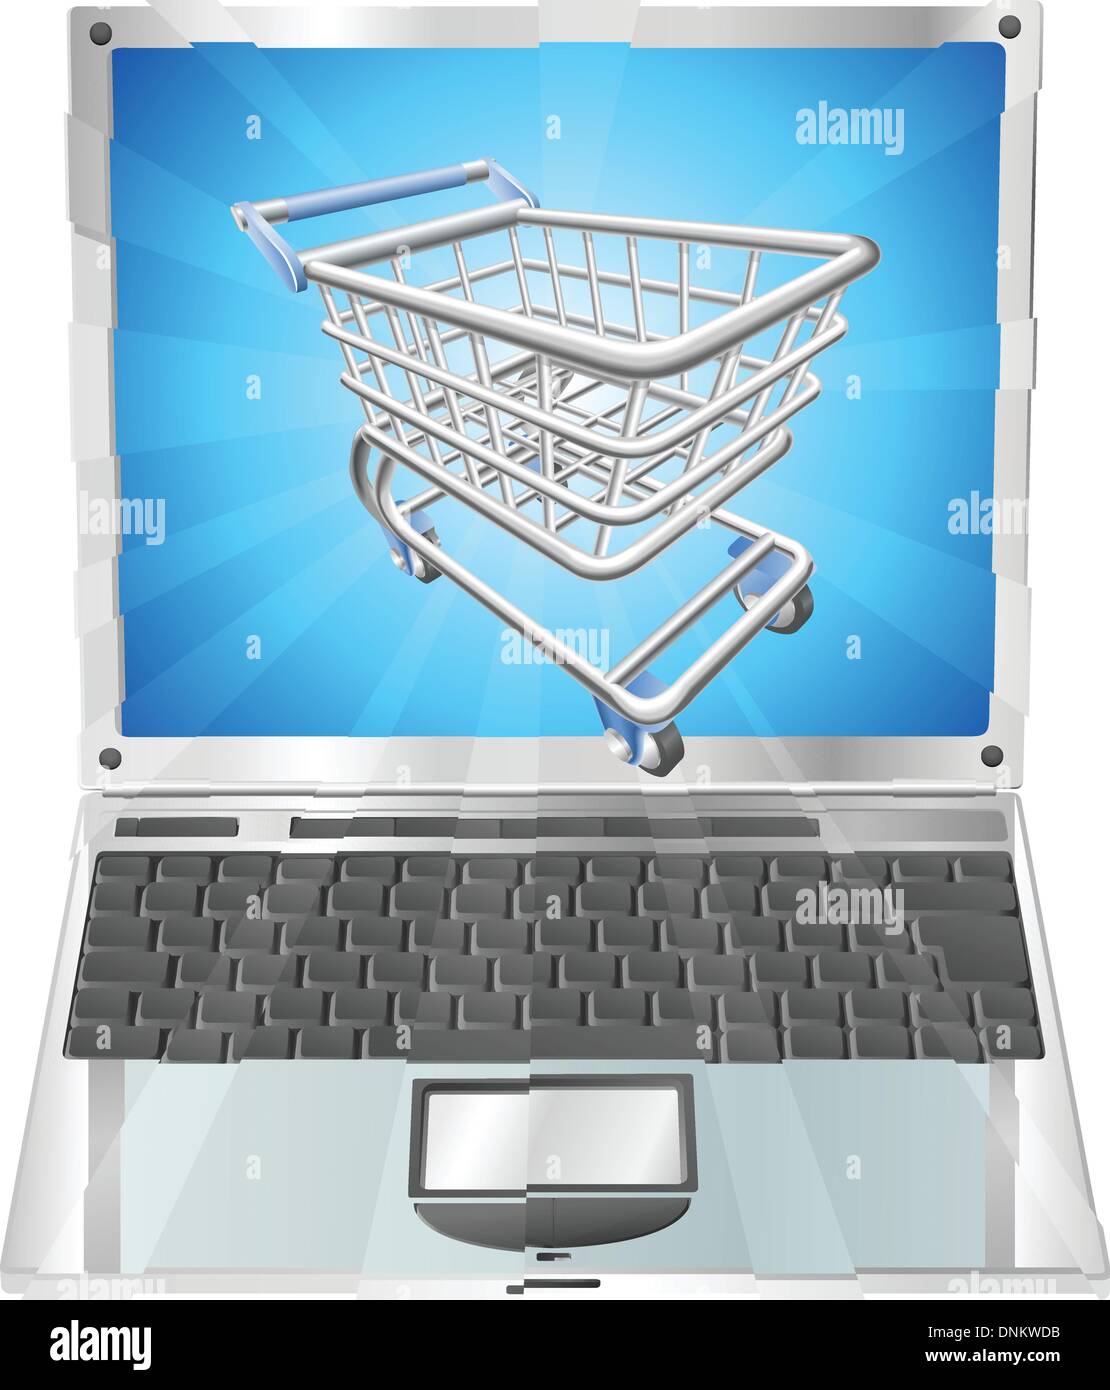 Shopping Internet laptop concept illustration. Panier battant hors de l'écran du portable Illustration de Vecteur